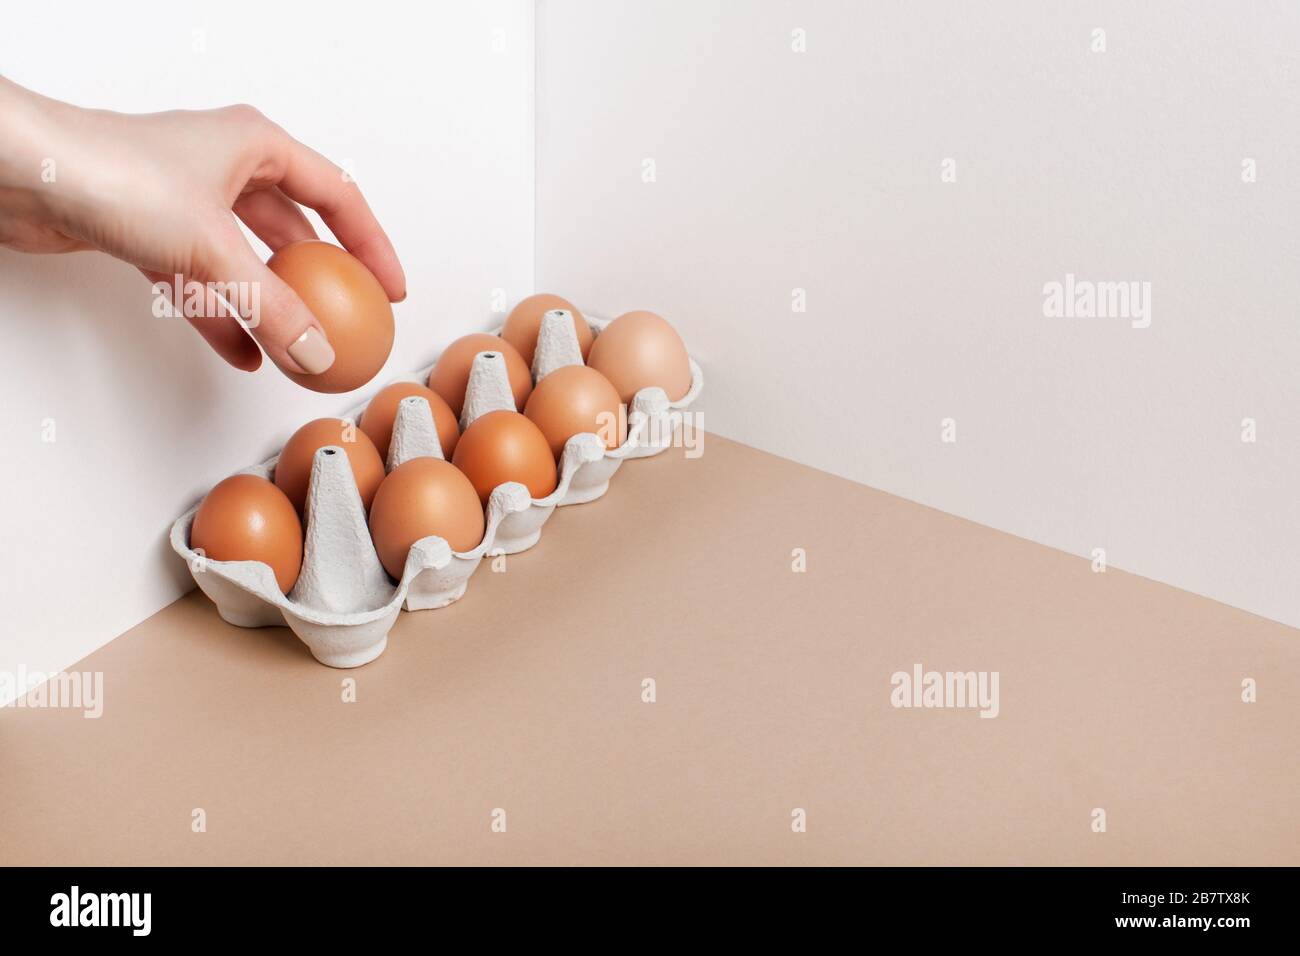 La main femelle prend un œuf de la boîte. Concept de nourriture minimaliste, régime de keto. Banque D'Images